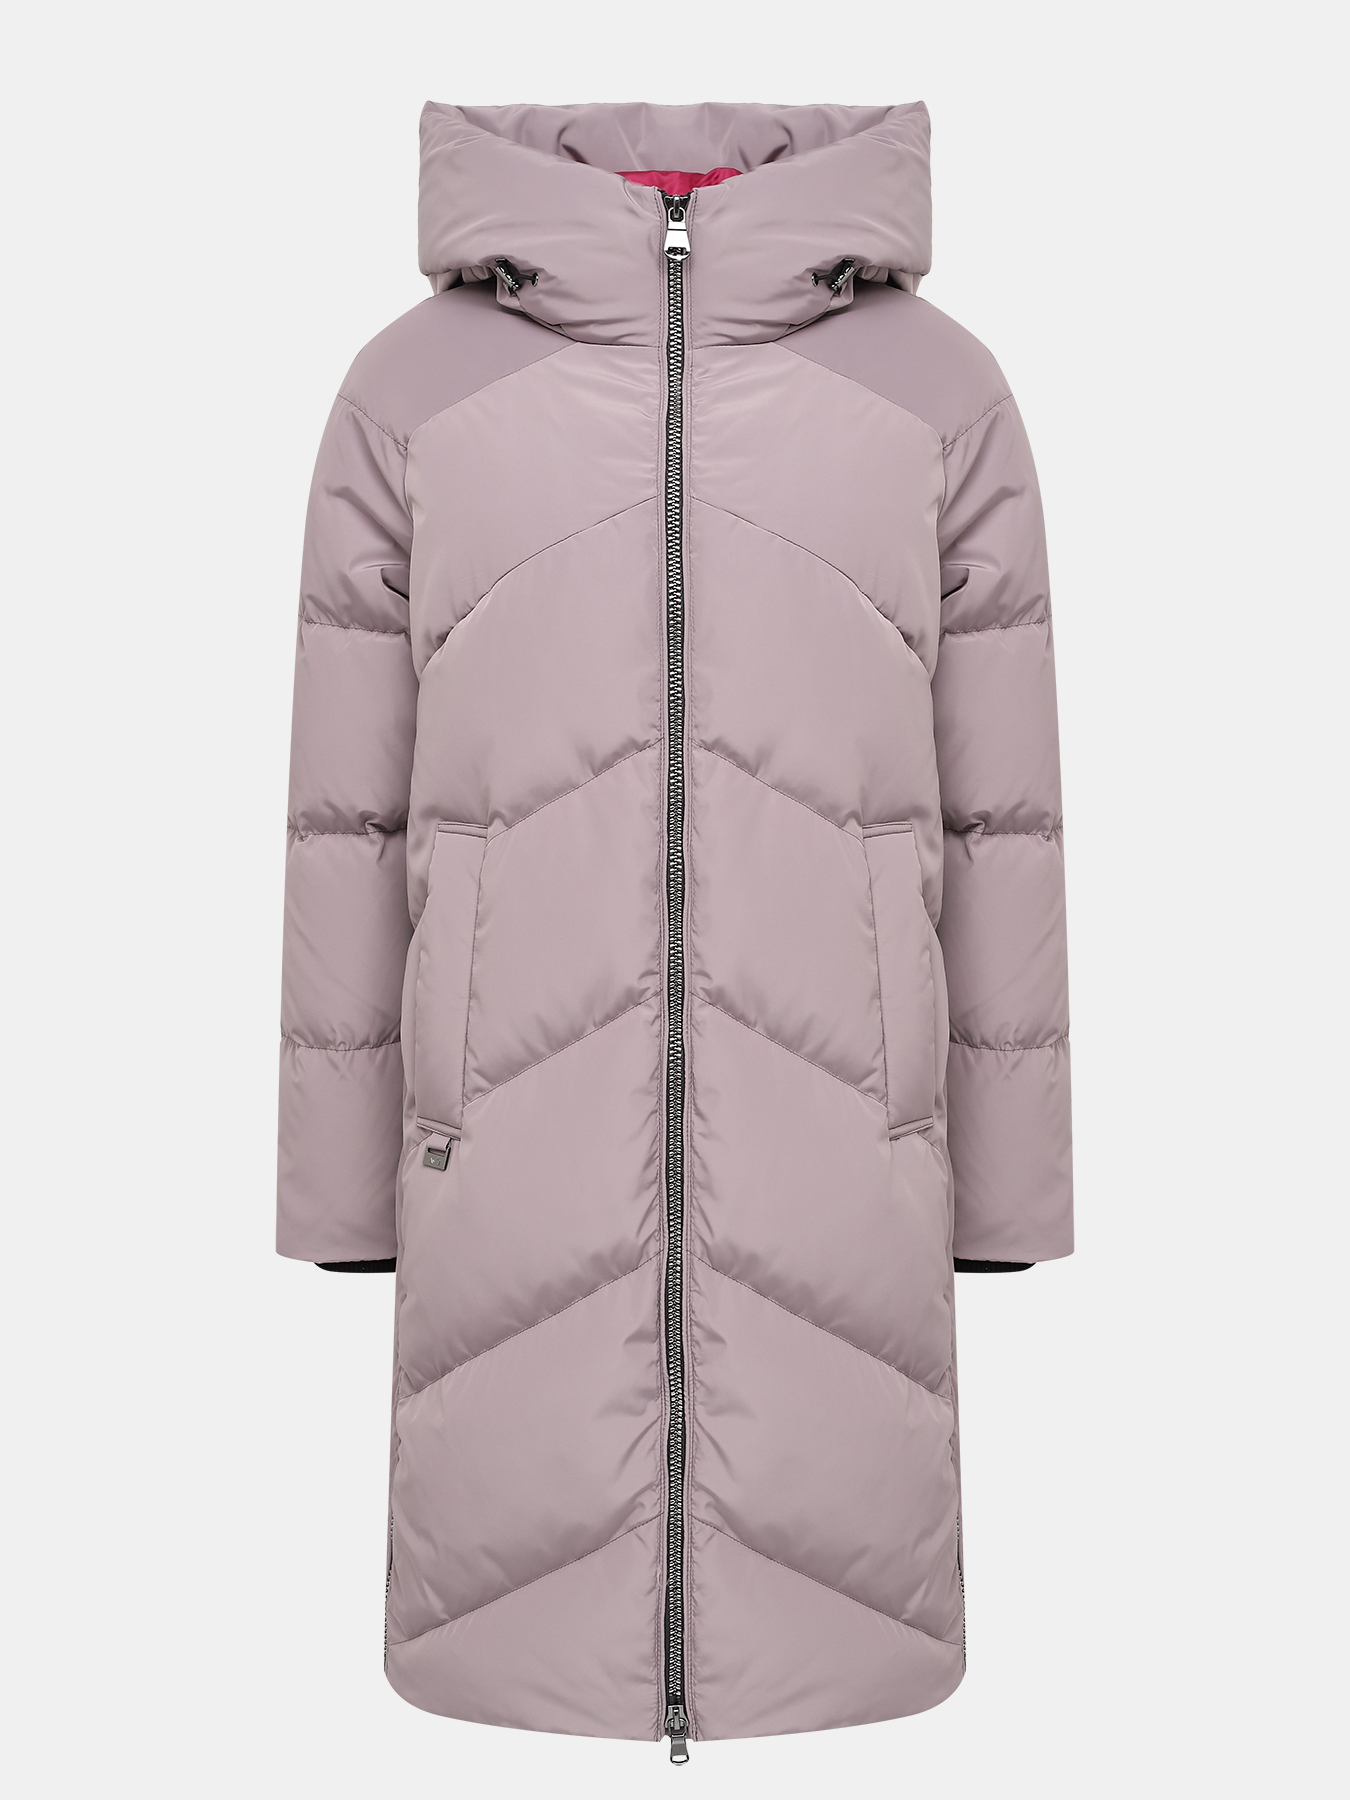 Пальто зимнее AVI 433627-025, цвет сиреневый, размер 48